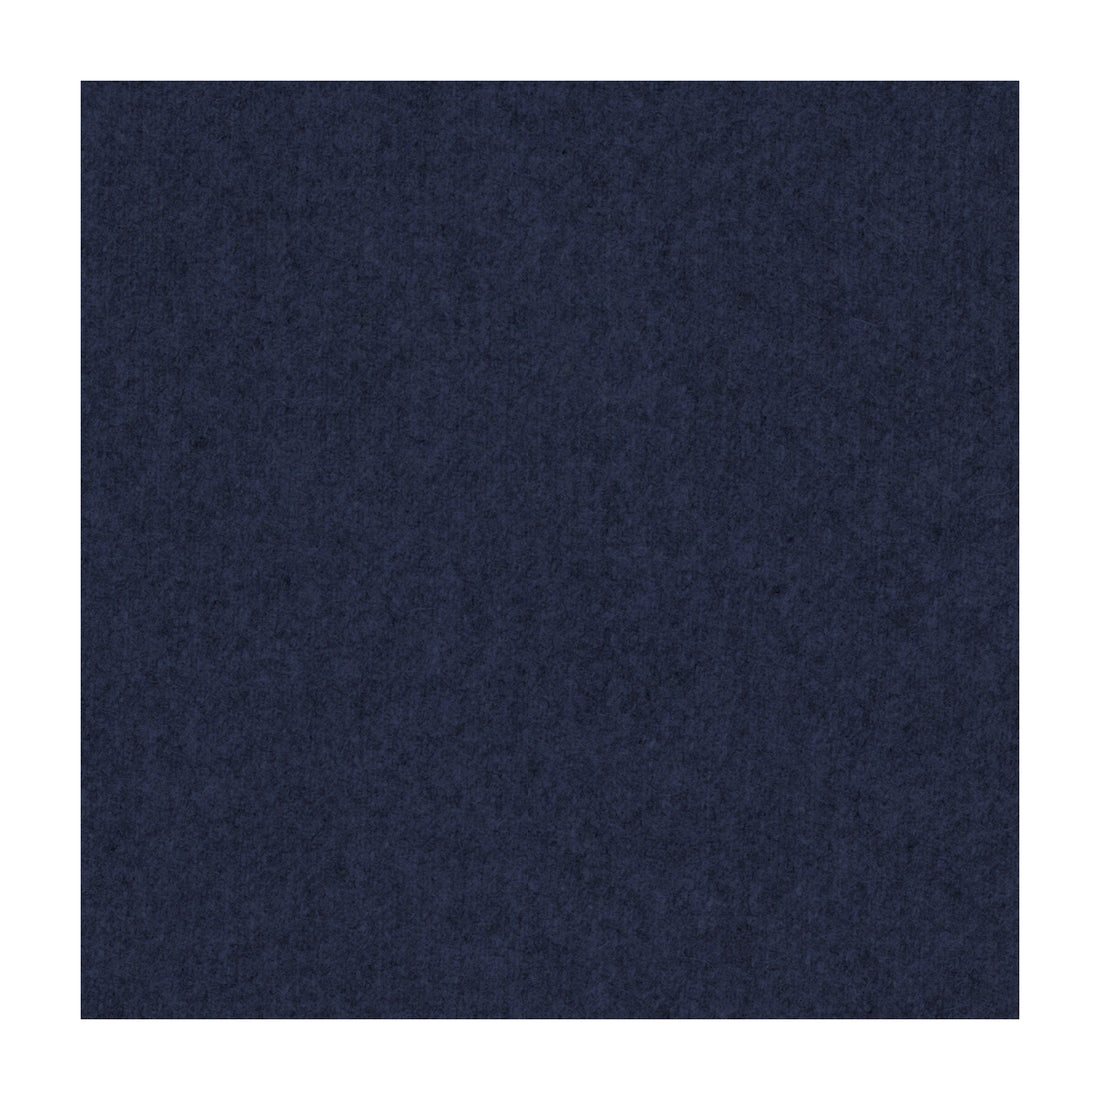 Skye Wool fabric in ink color - pattern 2017118.50.0 - by Lee Jofa